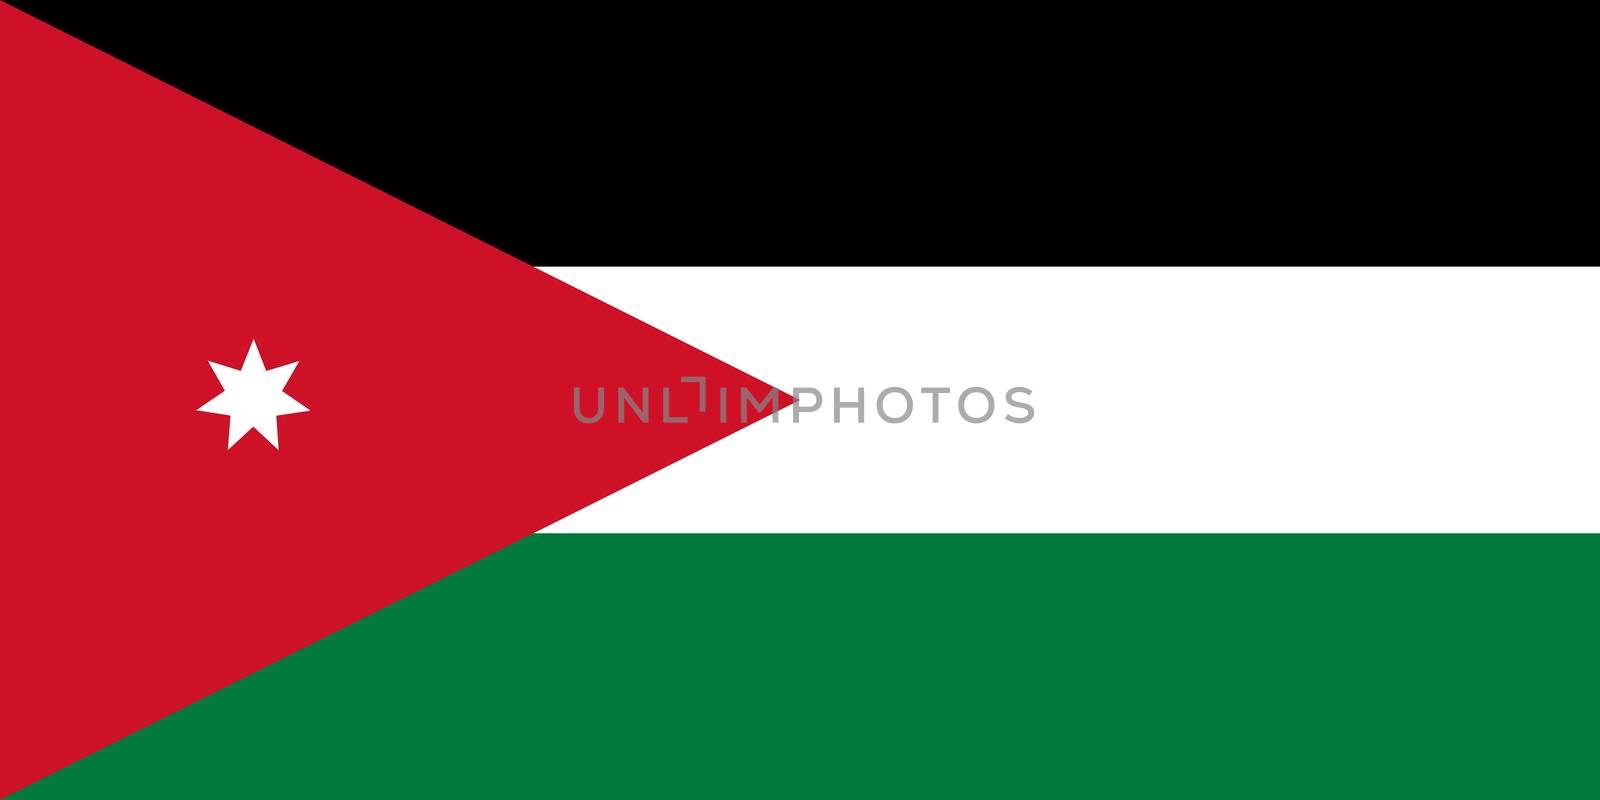 The national flag of Jordan